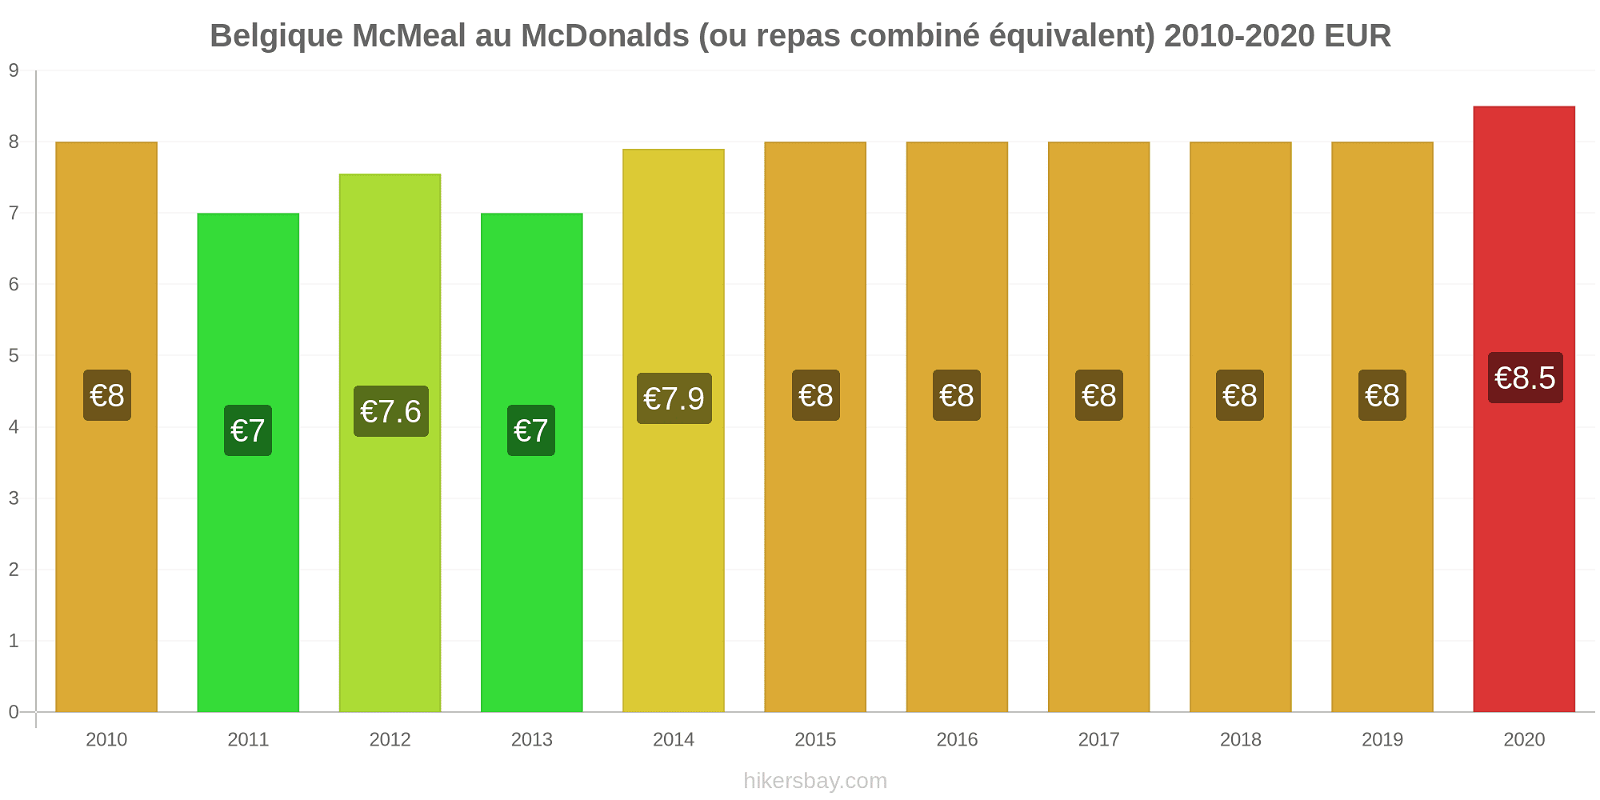 Belgique changements de prix McMeal à McDonald ' s (ou Combo équivalent tourteau) hikersbay.com